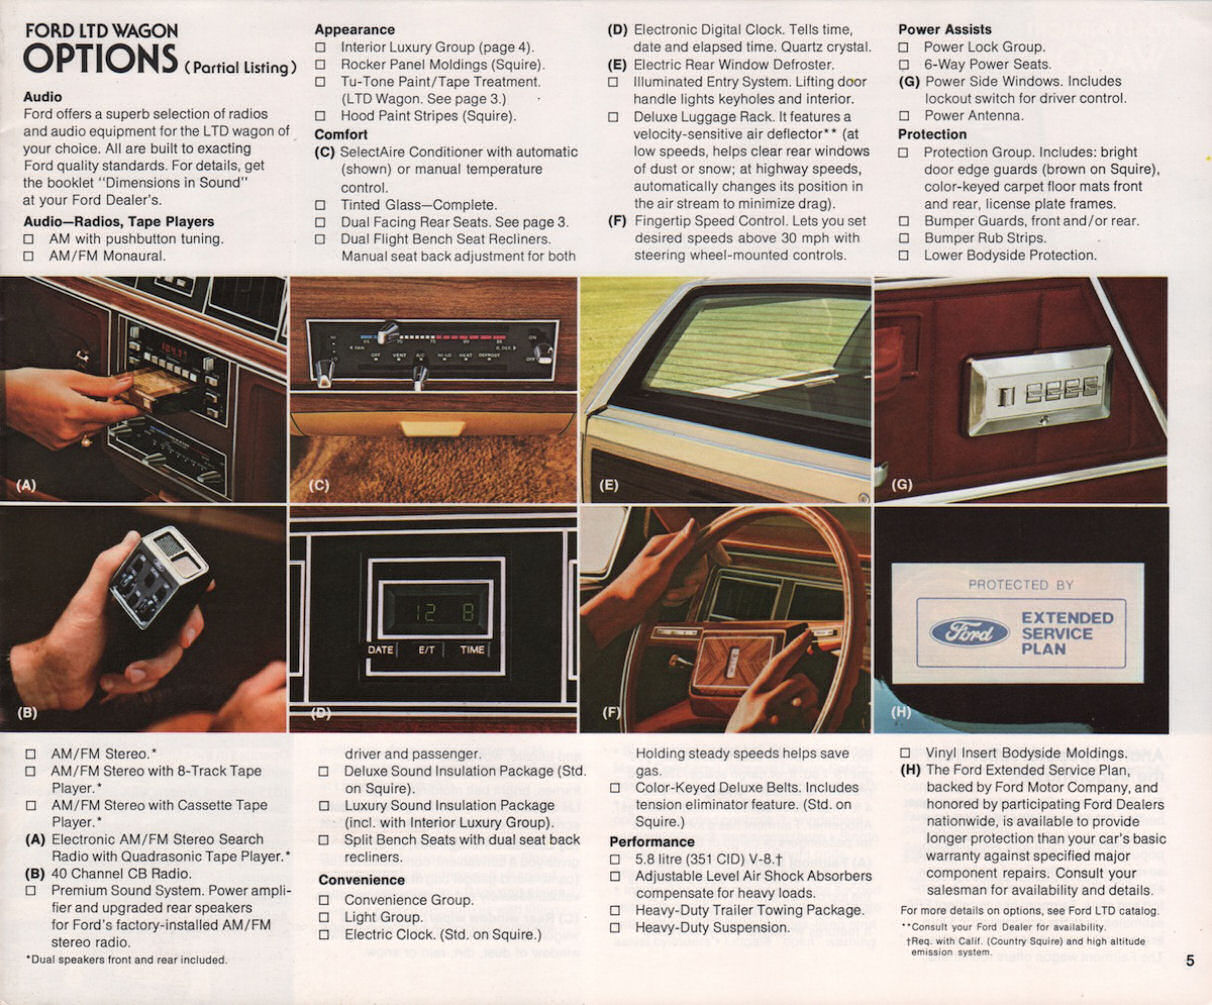 n_1979 Ford Wagons-05.jpg